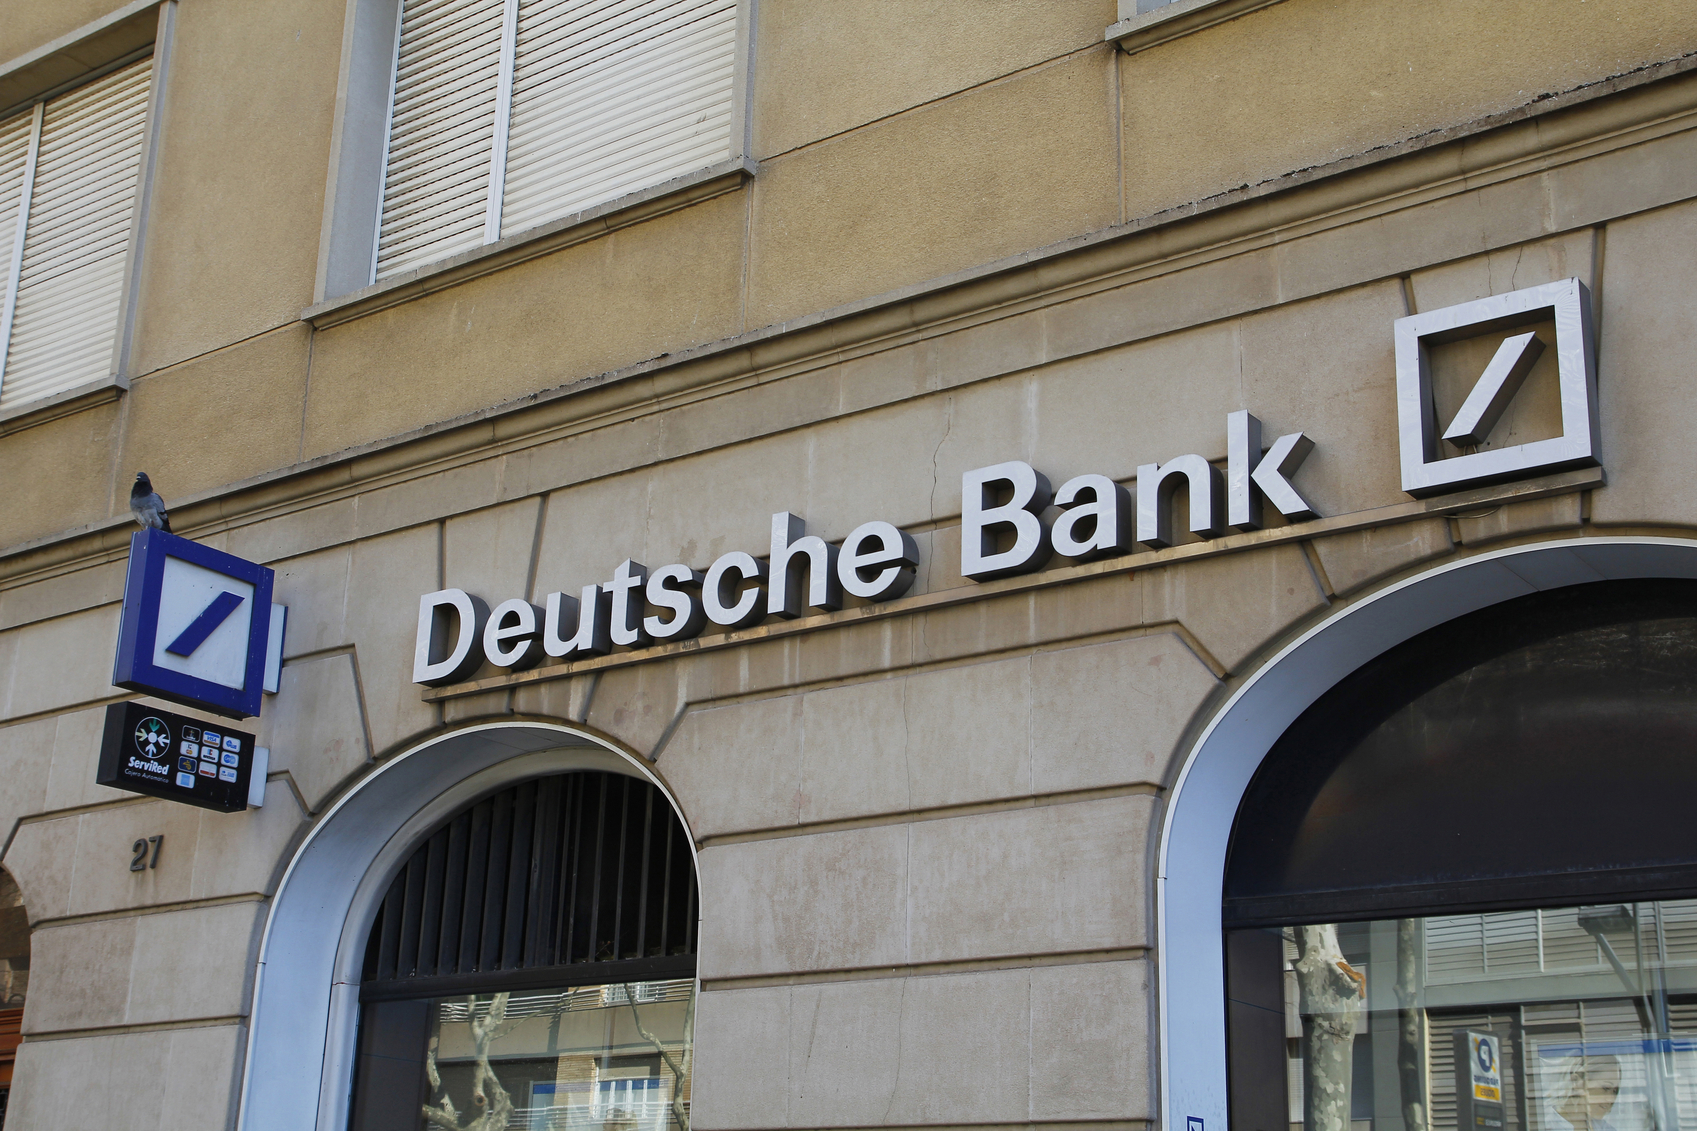 financialounge -  Deutsche Bank Europa non performing loan settore bancario sofferenze bancarie